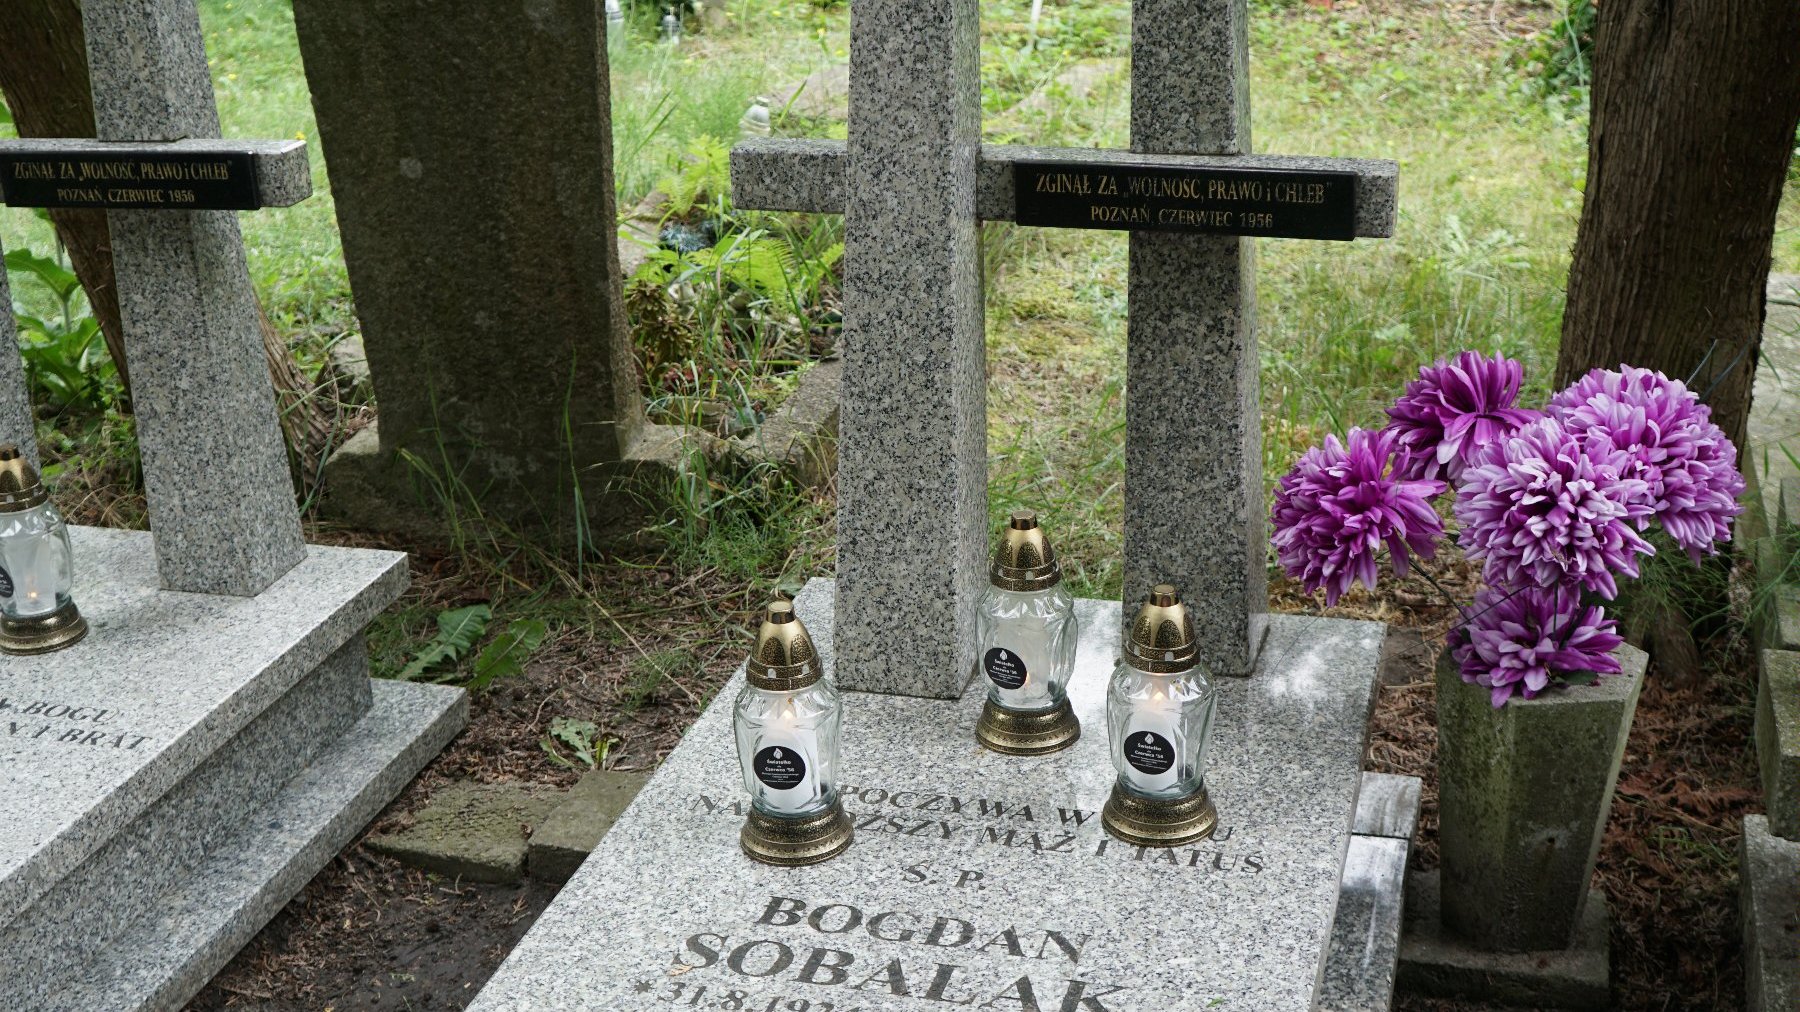 Zdjęcie przedstawia grób, na którym stoją znicze.